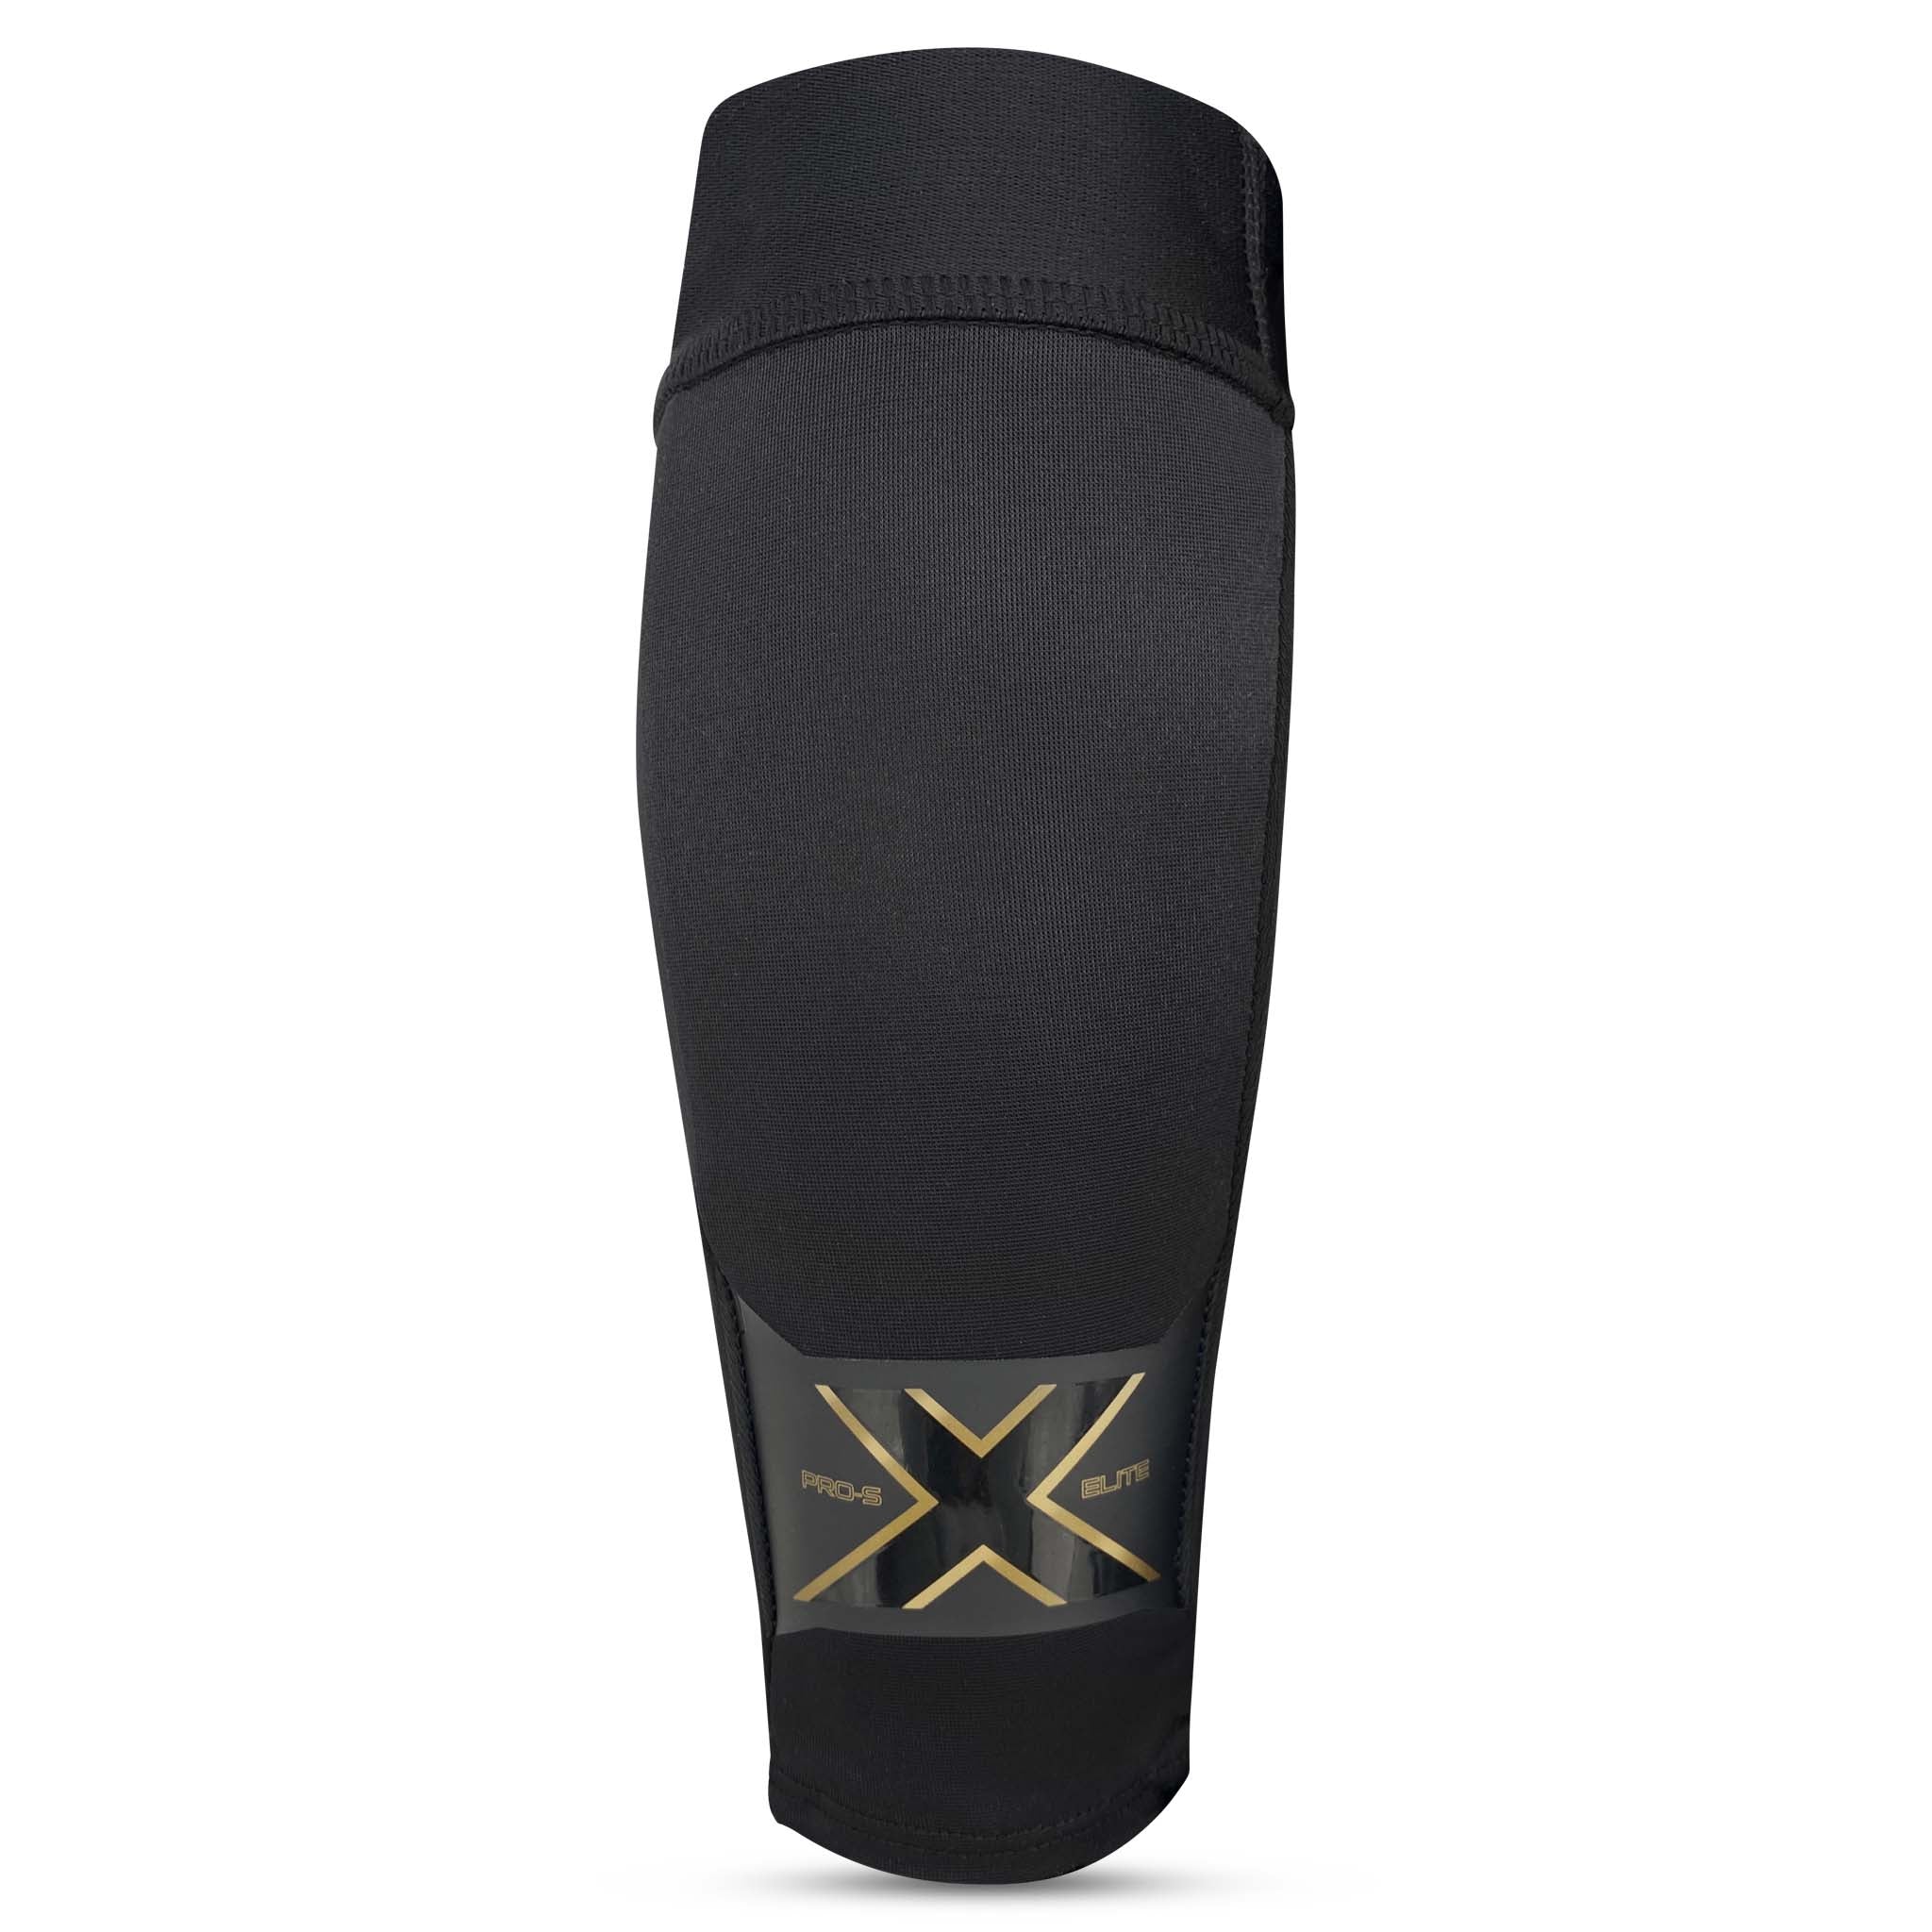 Pro-S Elite X #färg_svart/guld